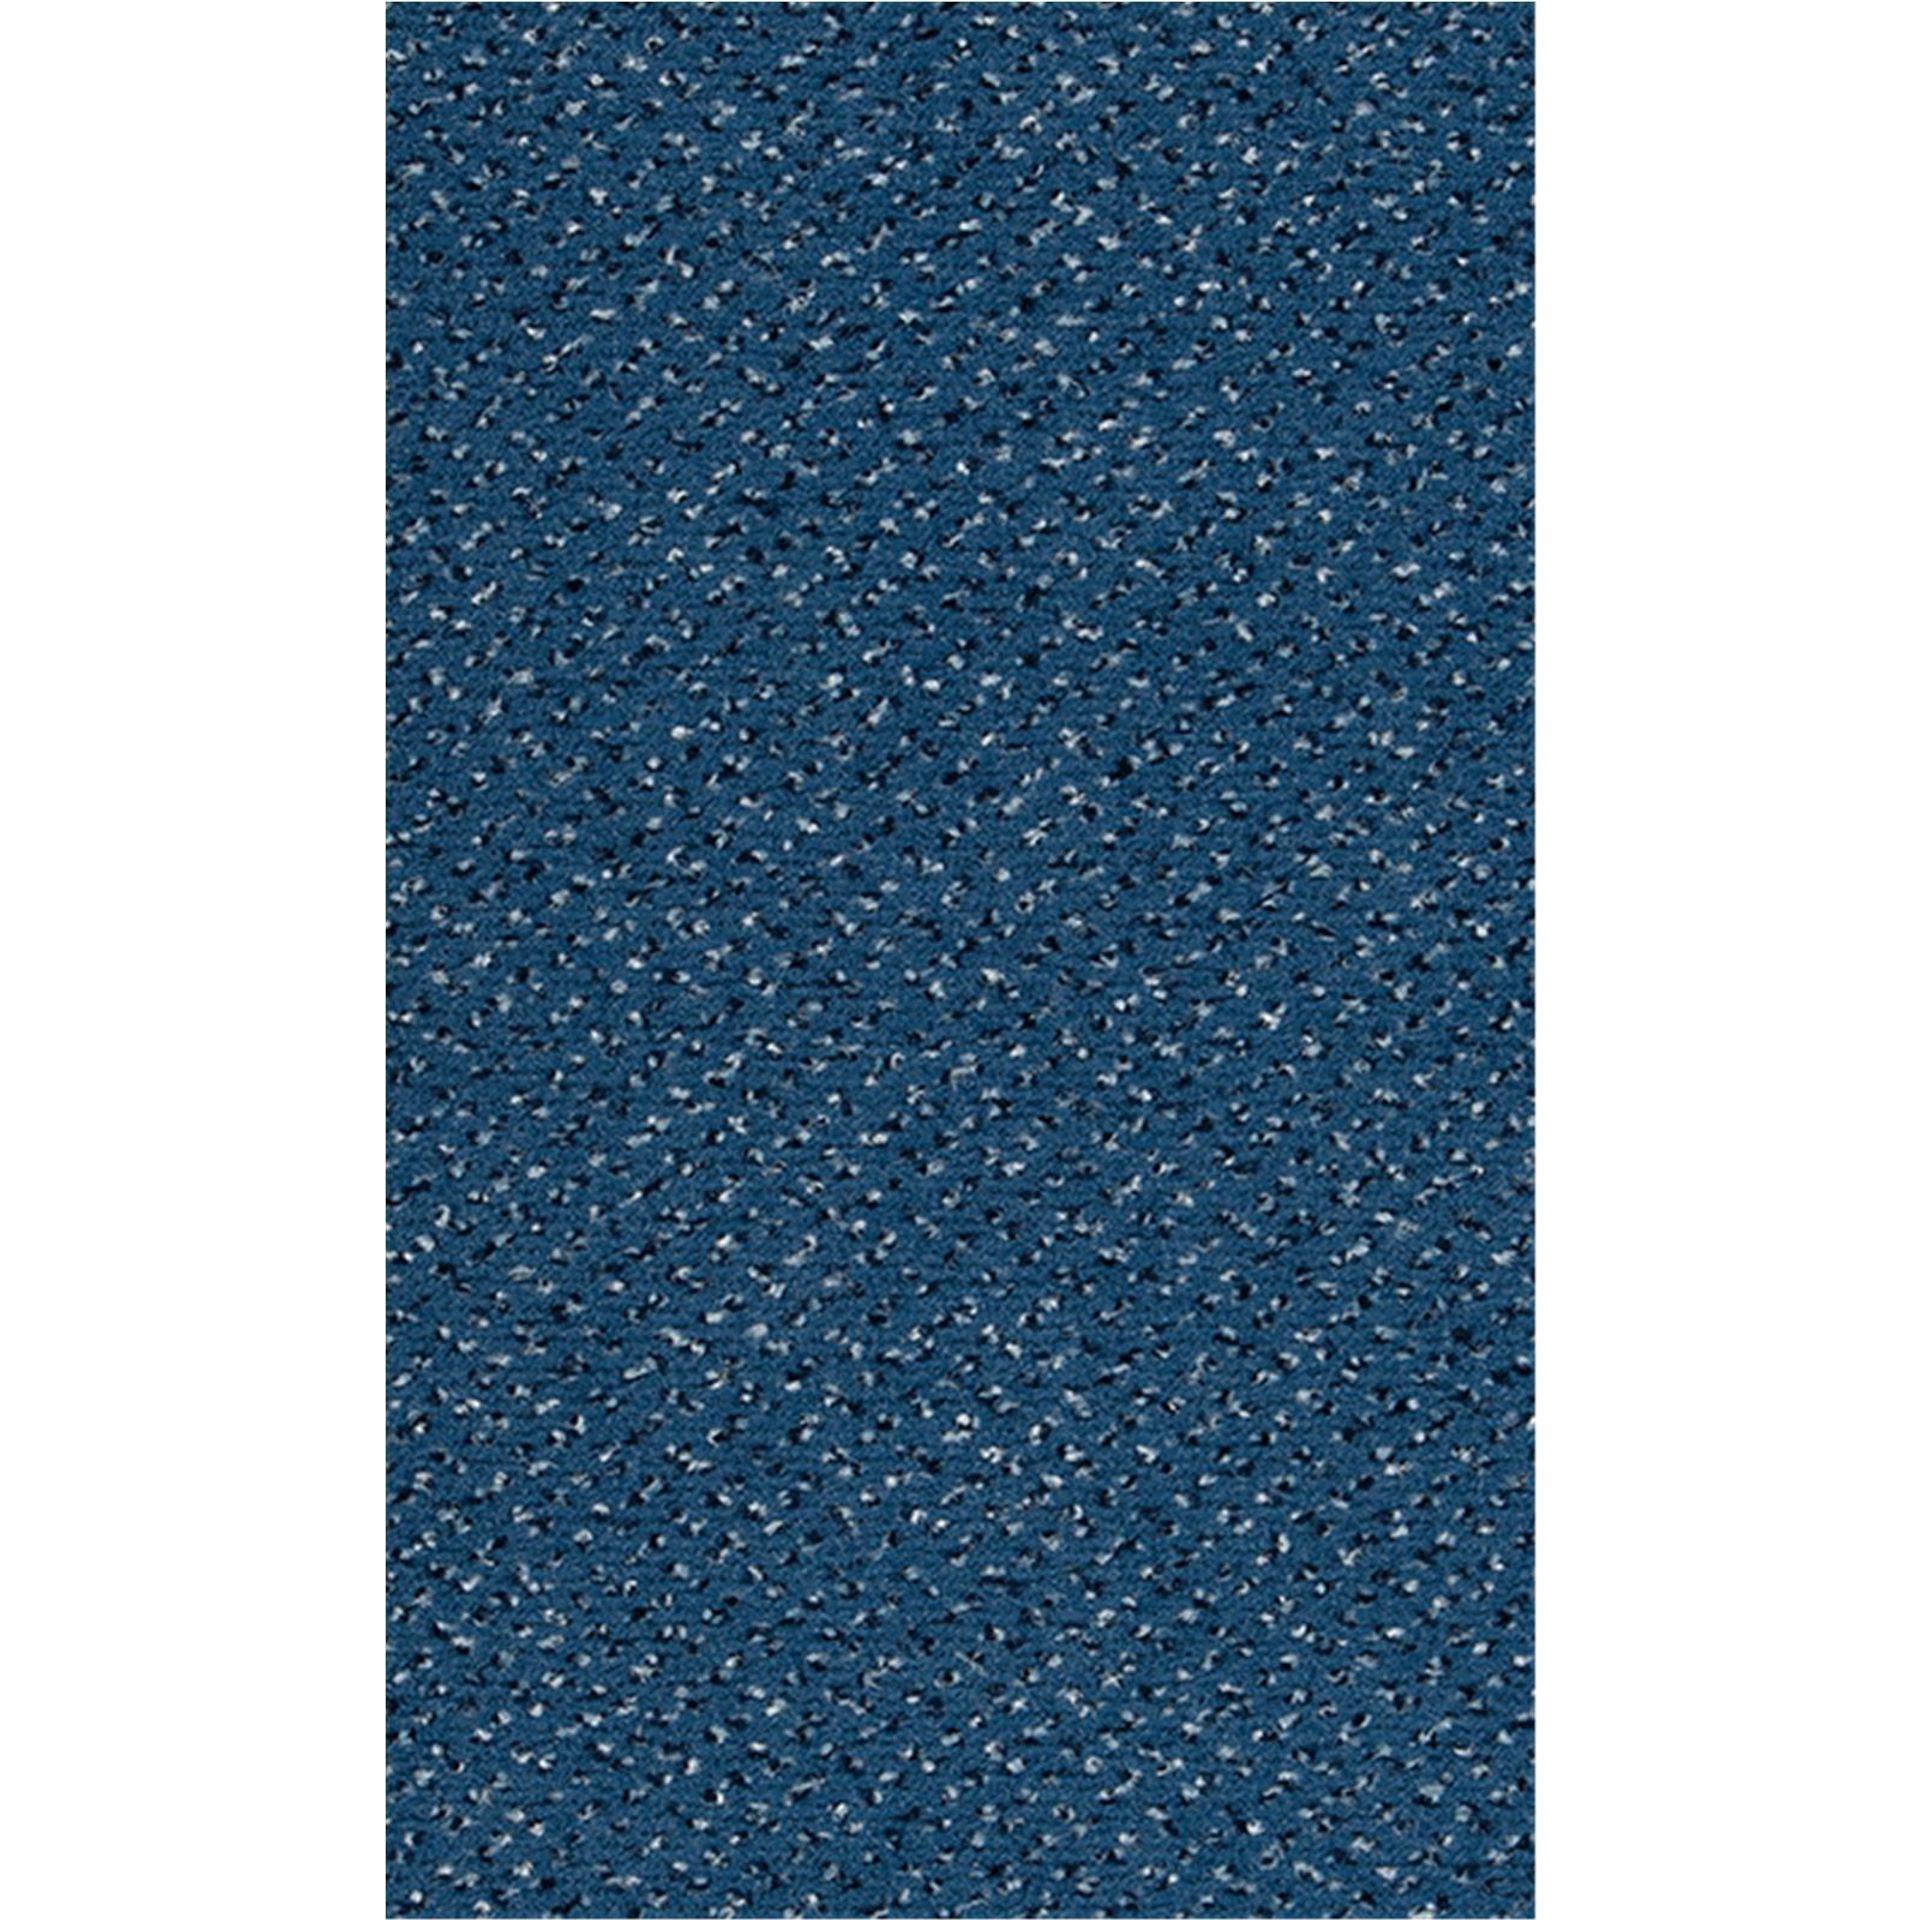 Teppichboden Vorwerk Passion 1006 ALEXIS Velours Blau 3R27 - Rollenbreite 500 cm